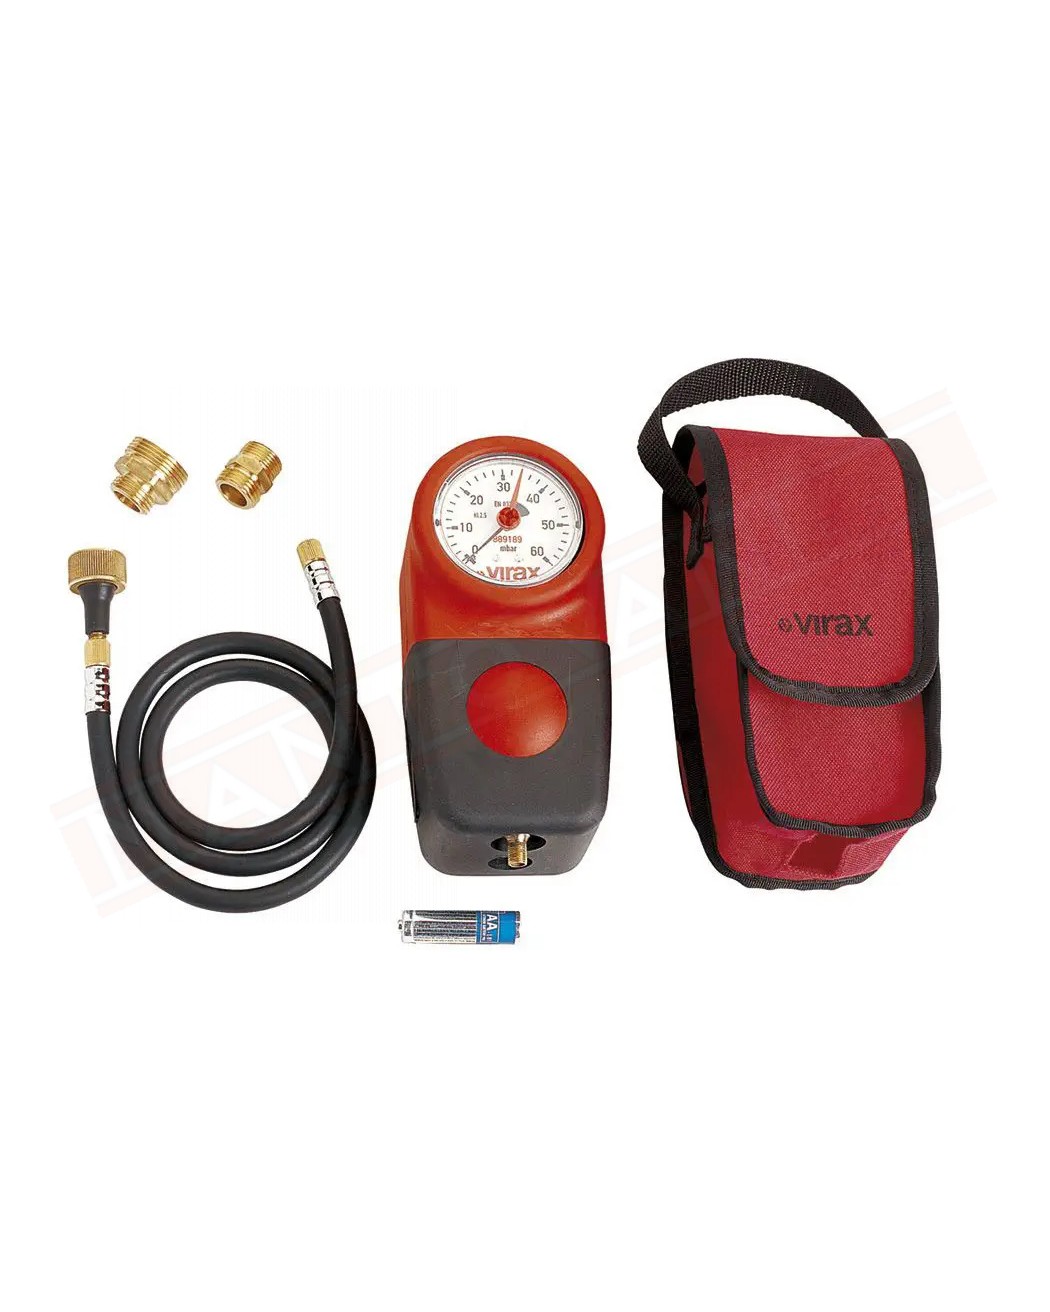 Virax apparecchio per verifica tenuta impianto gas